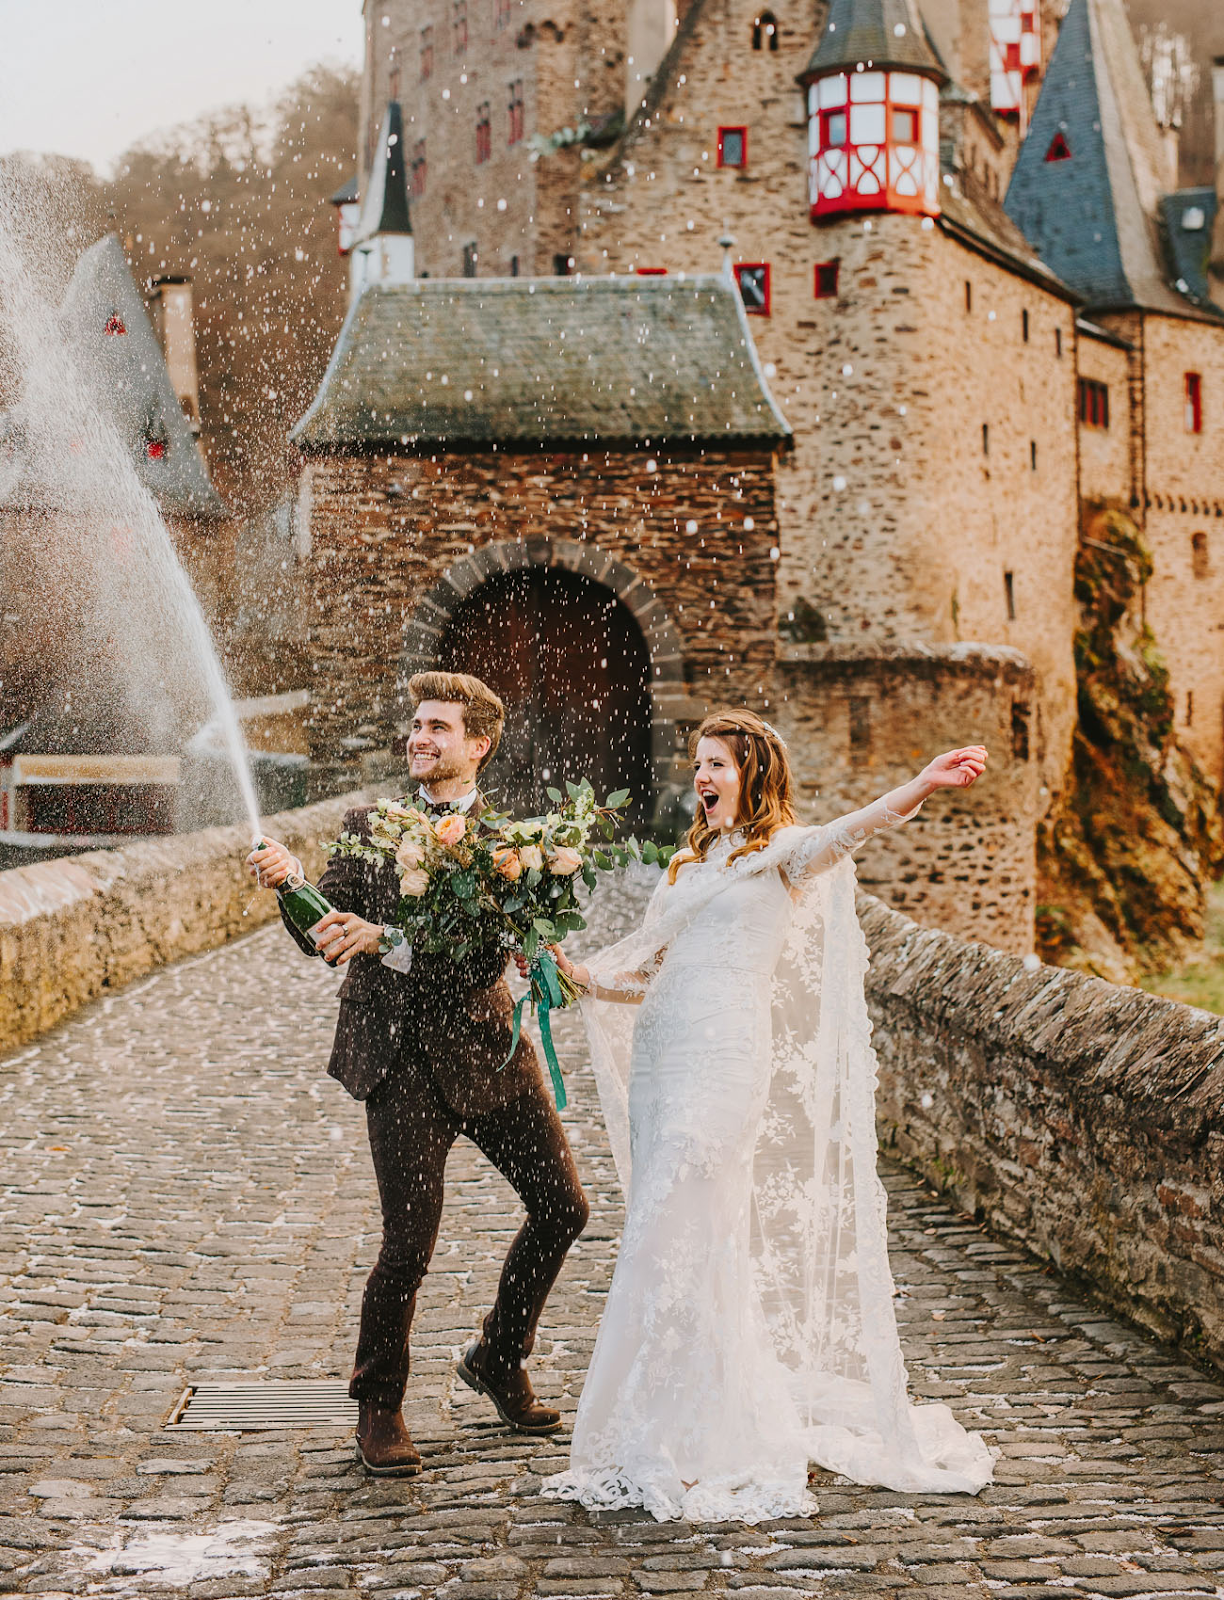 Casal de noivos em frente a um castelo antigo, abrindo uma garrafa de espumante em comemoração.